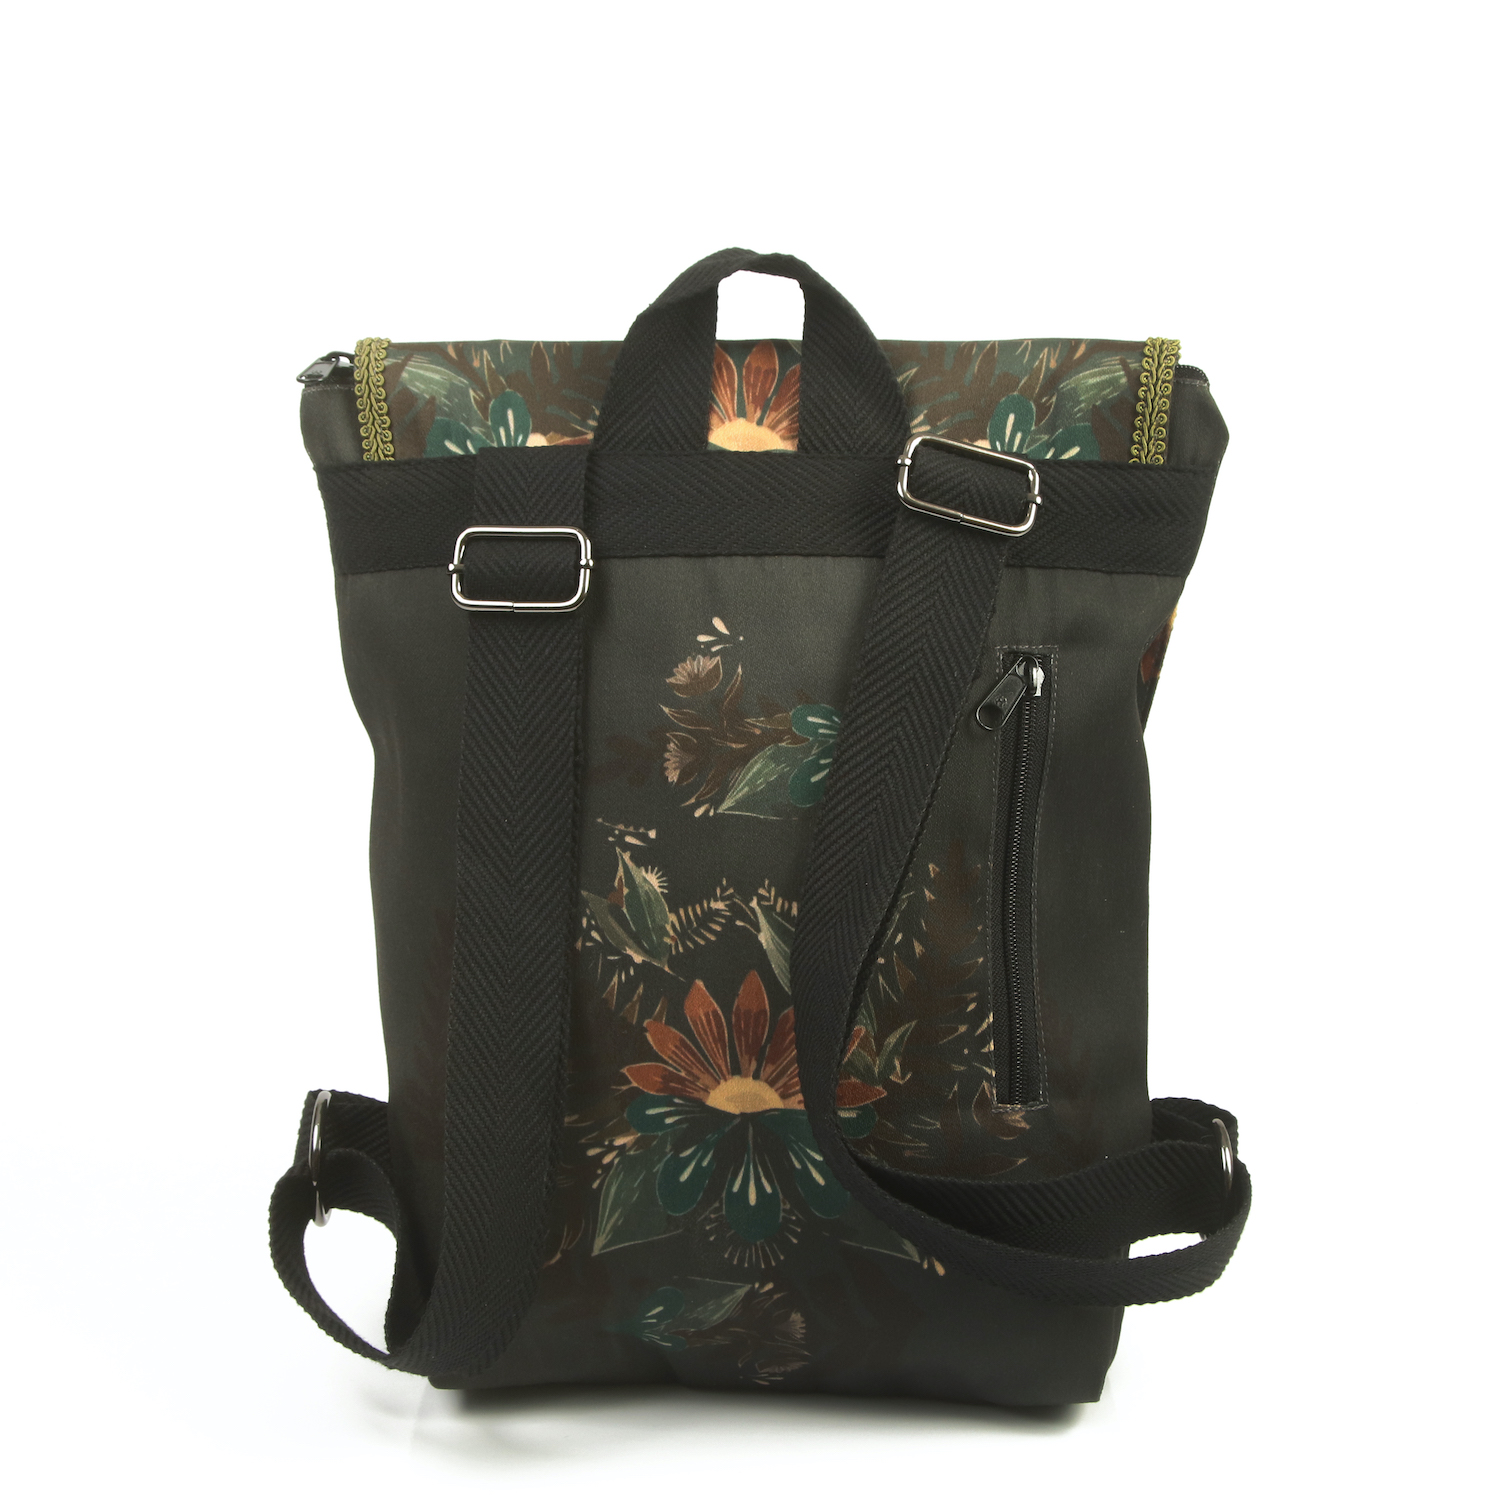 LazyDayz-Designs-Backpack-γυναικείος-σάκος-πλάτης-χειροποίητος bb0706c